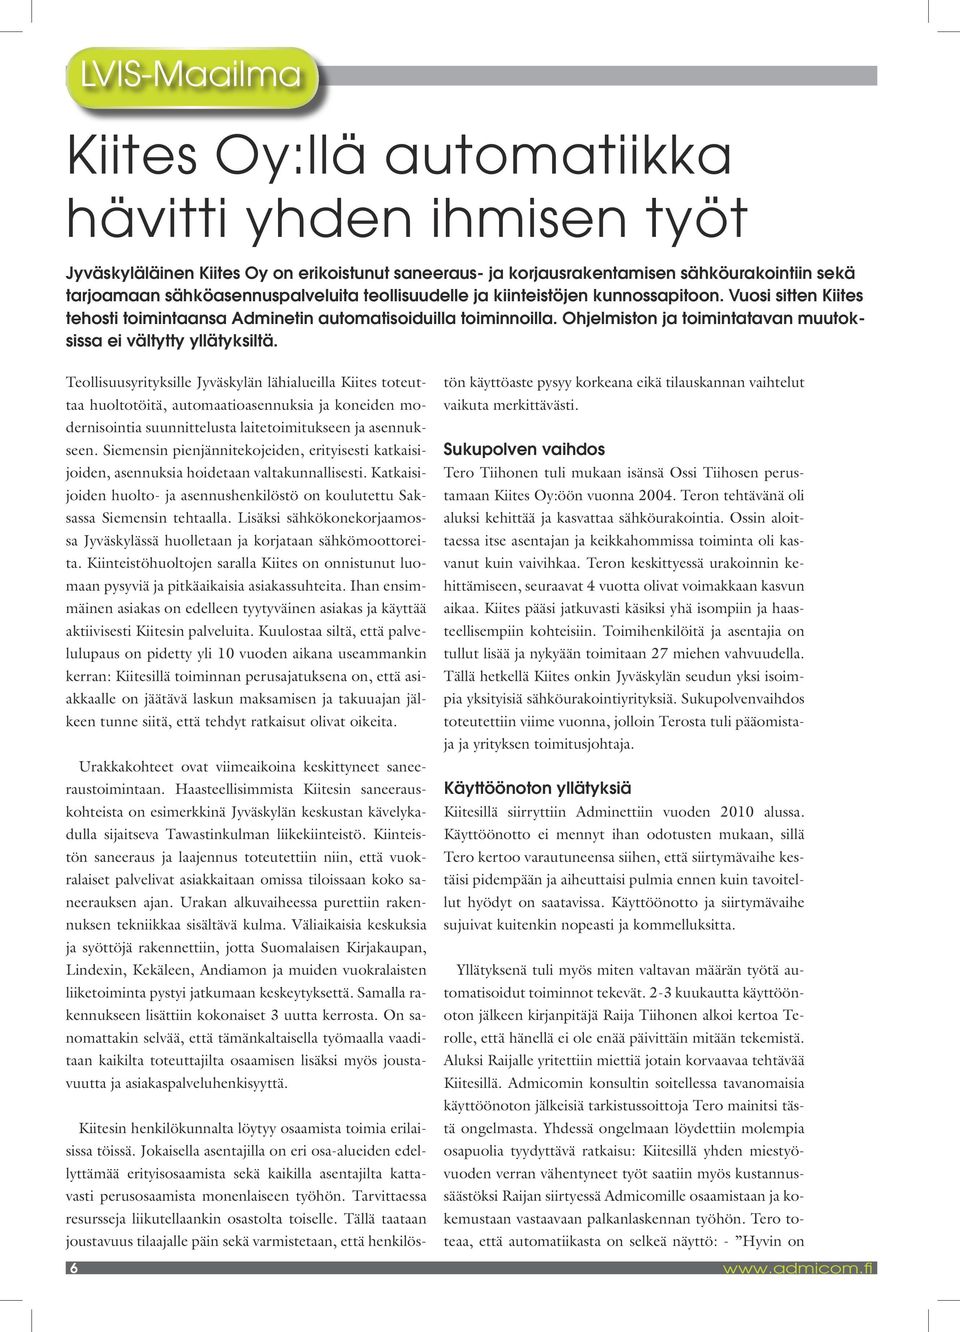 Teollisuusyrityksille Jyväskylän lähialueilla Kiites toteuttaa huoltotöitä, automaatioasennuksia ja koneiden modernisointia suunnittelusta laitetoimitukseen ja asennukseen.